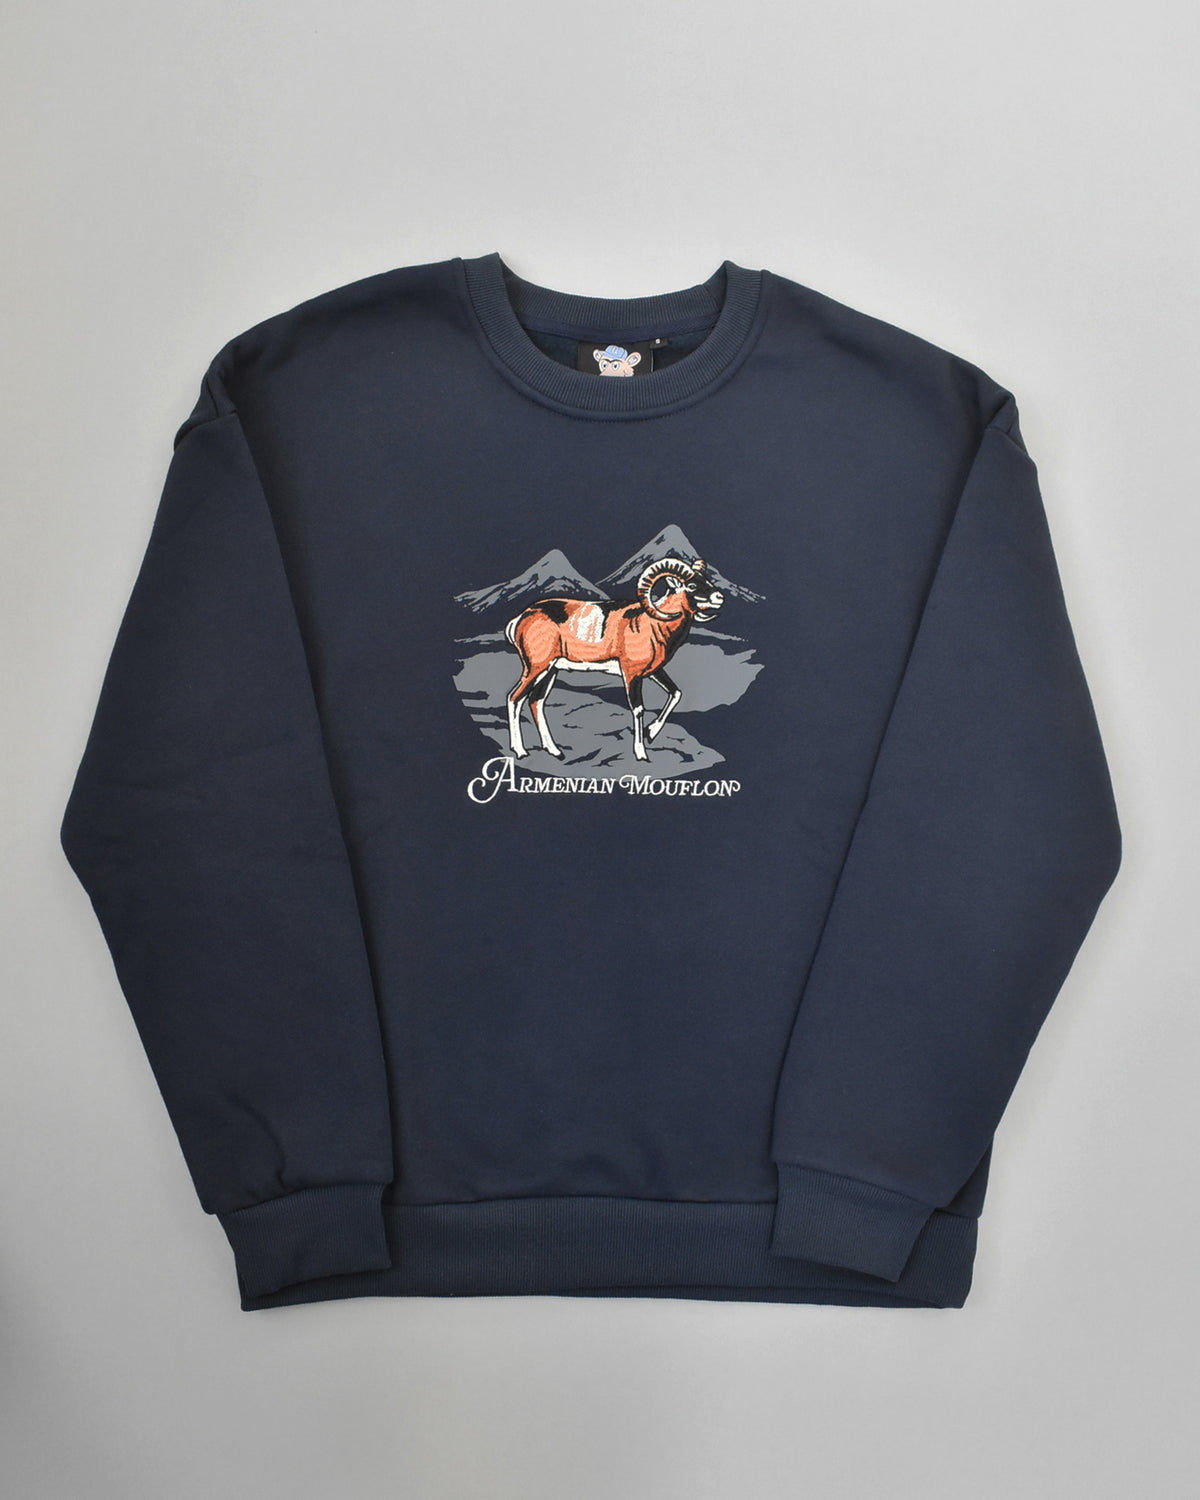 🚨ONLY ONE🚨 Armenian Mouflon Sweatshirt - SMALL